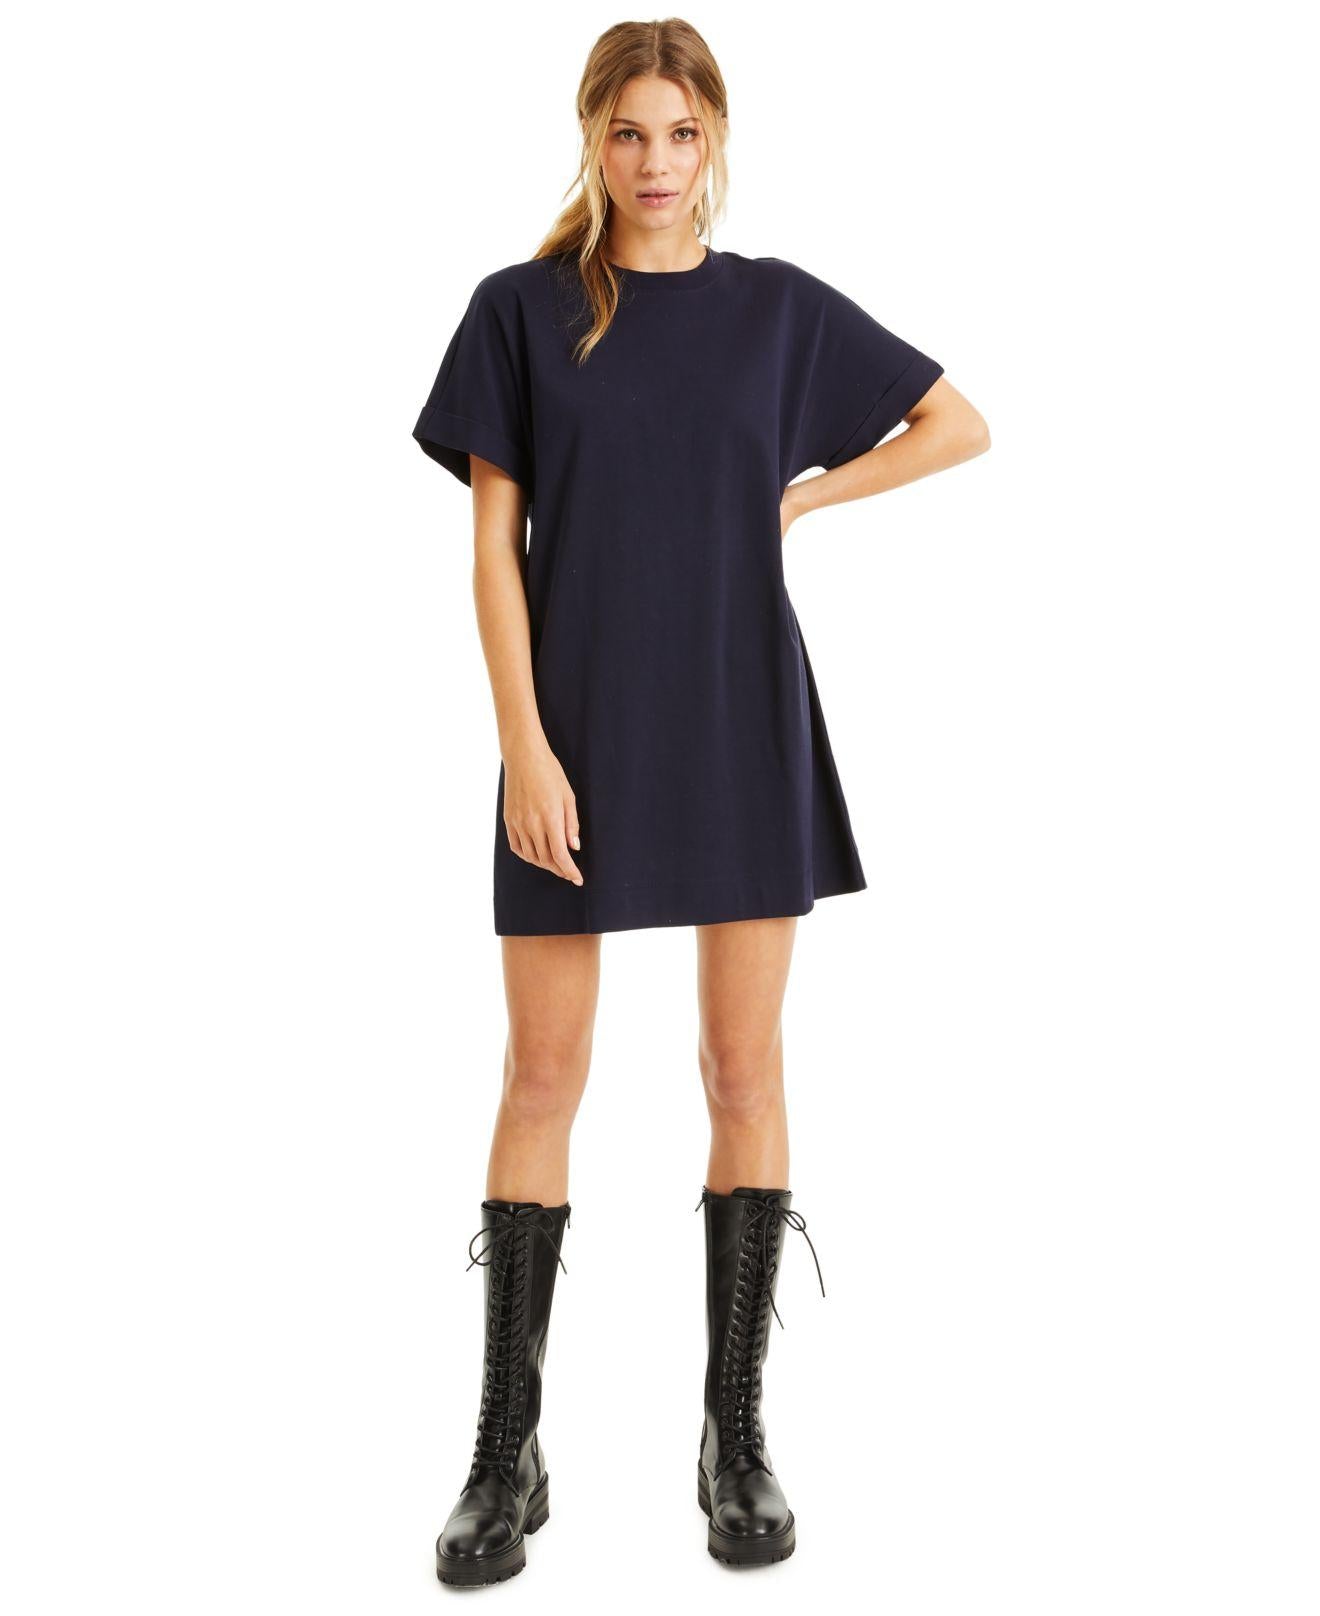 CULPOS X INC Womens Navy Tee Shirt Short Sleeve Crew Neck Short Shift Dress M